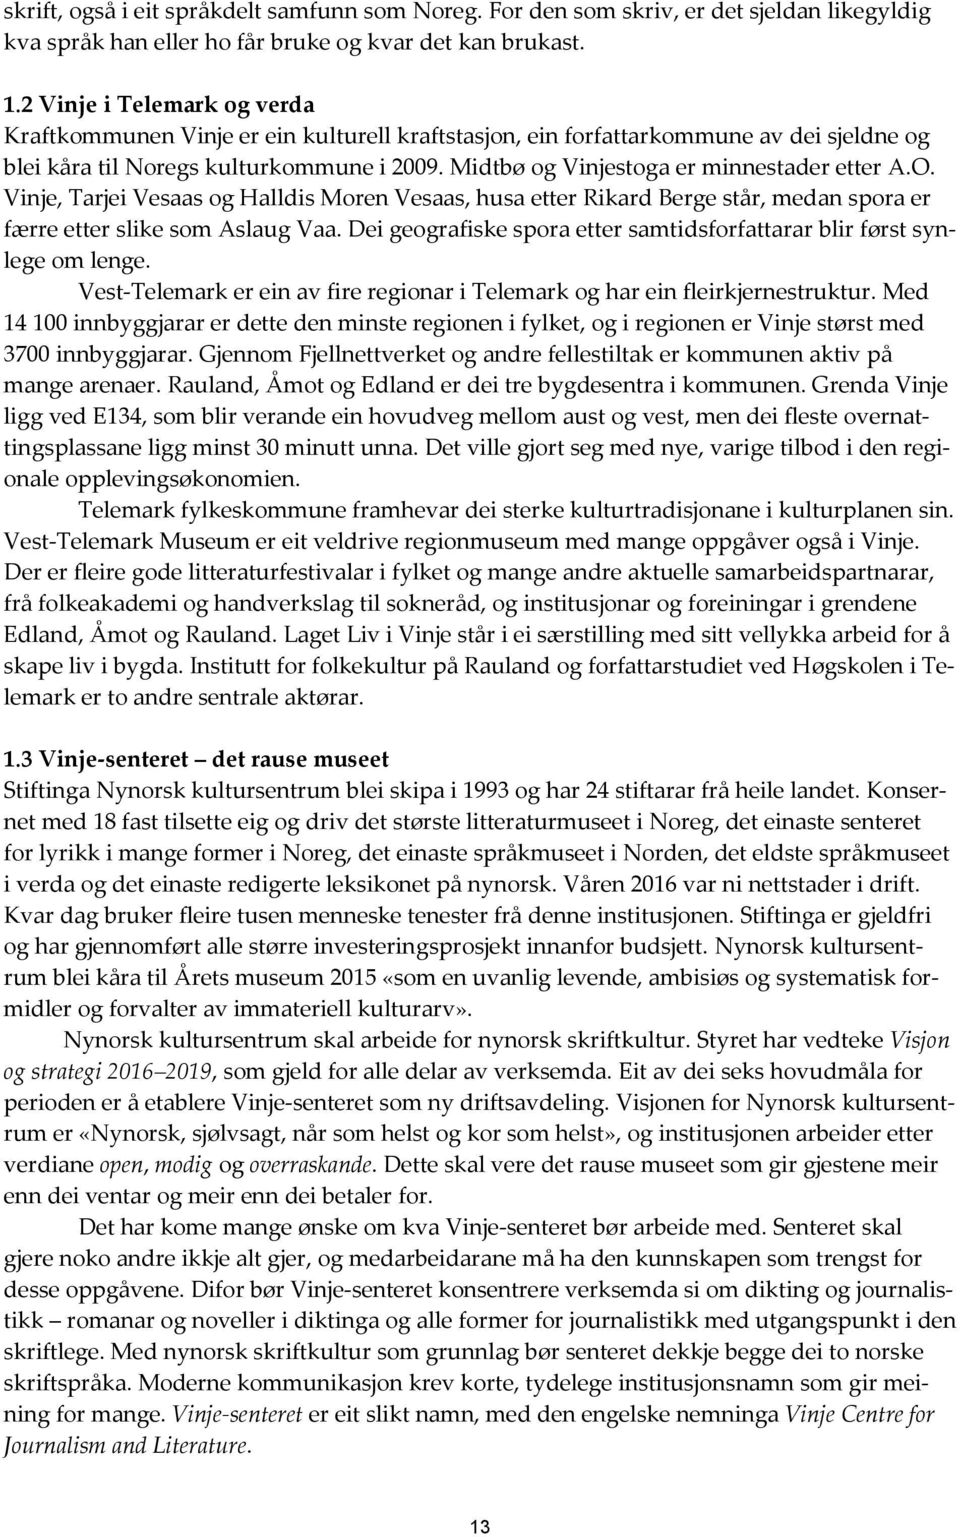 Midtbø og Vinjestoga er minnestader etter A.O. Vinje, Tarjei Vesaas og Halldis Moren Vesaas, husa etter Rikard Berge står, medan spora er færre etter slike som Aslaug Vaa.